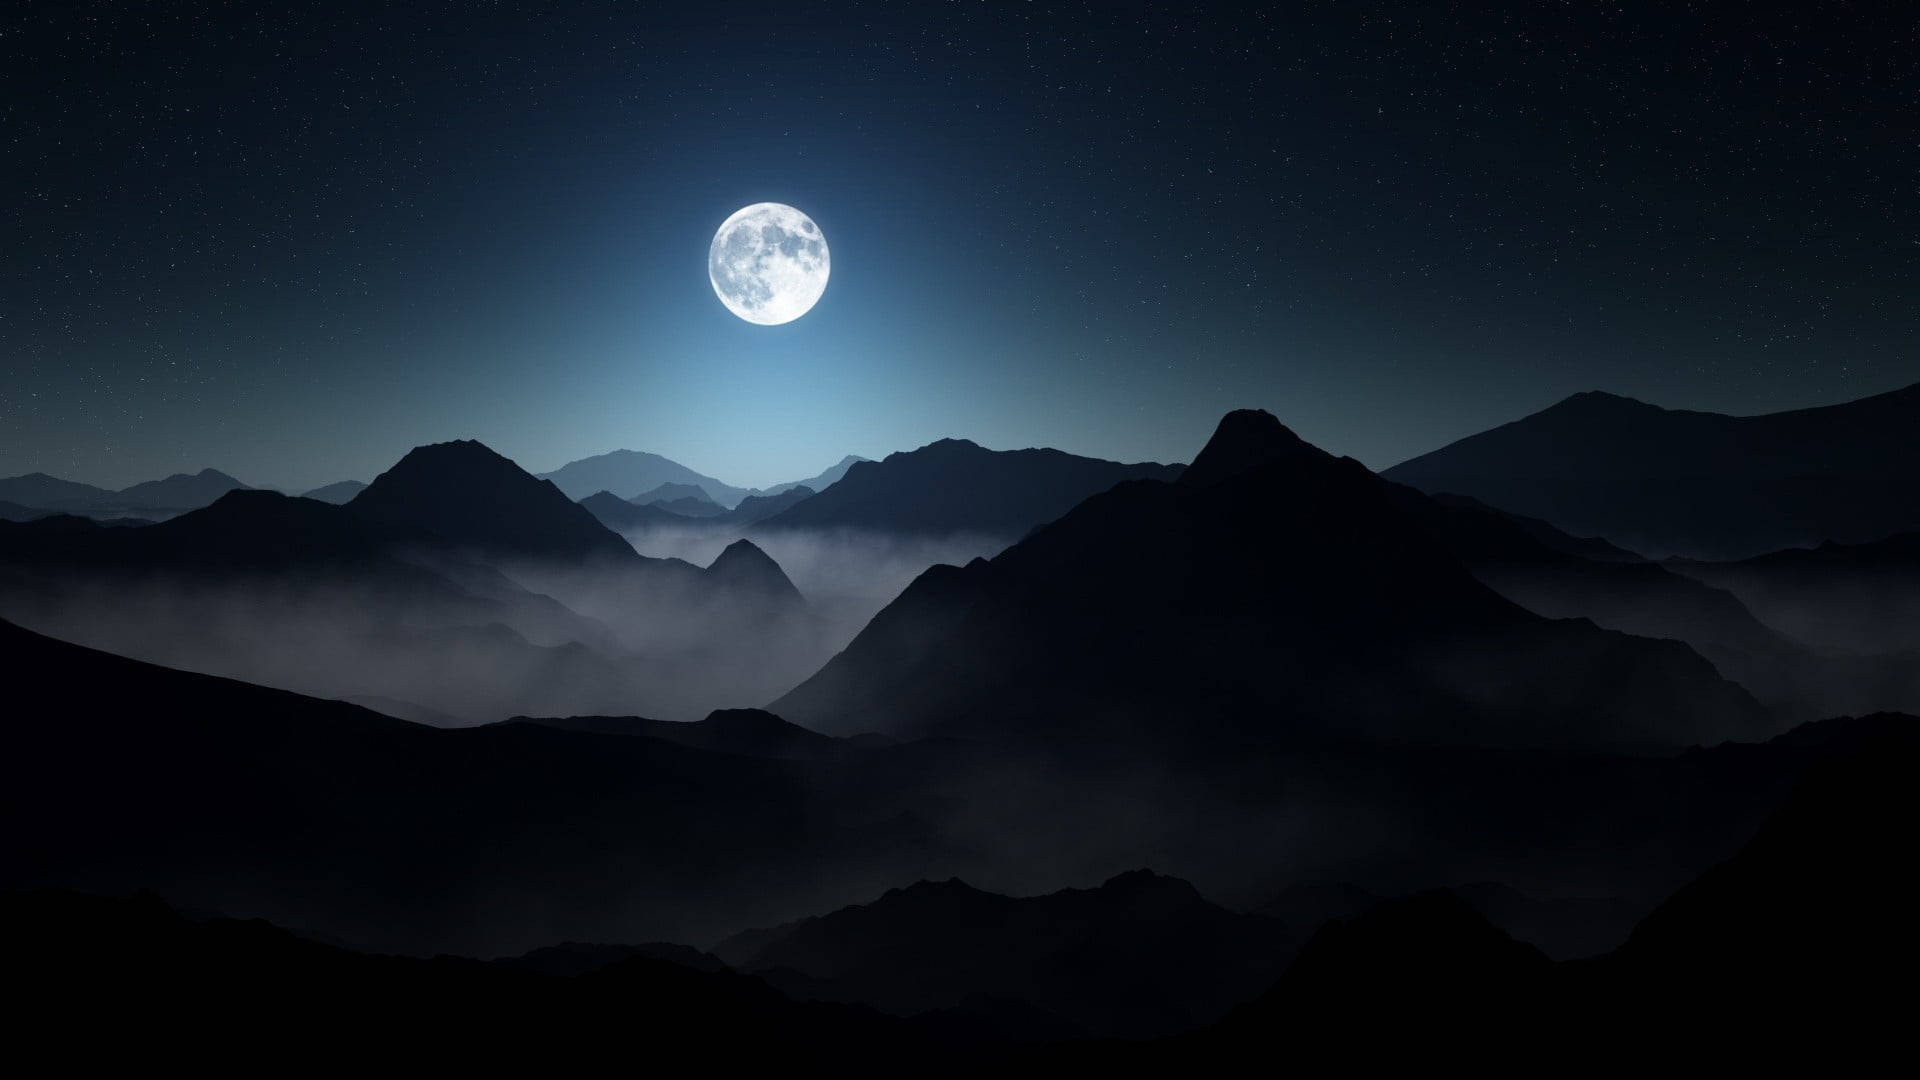 Dark Laptop Moon In Mountains At Night